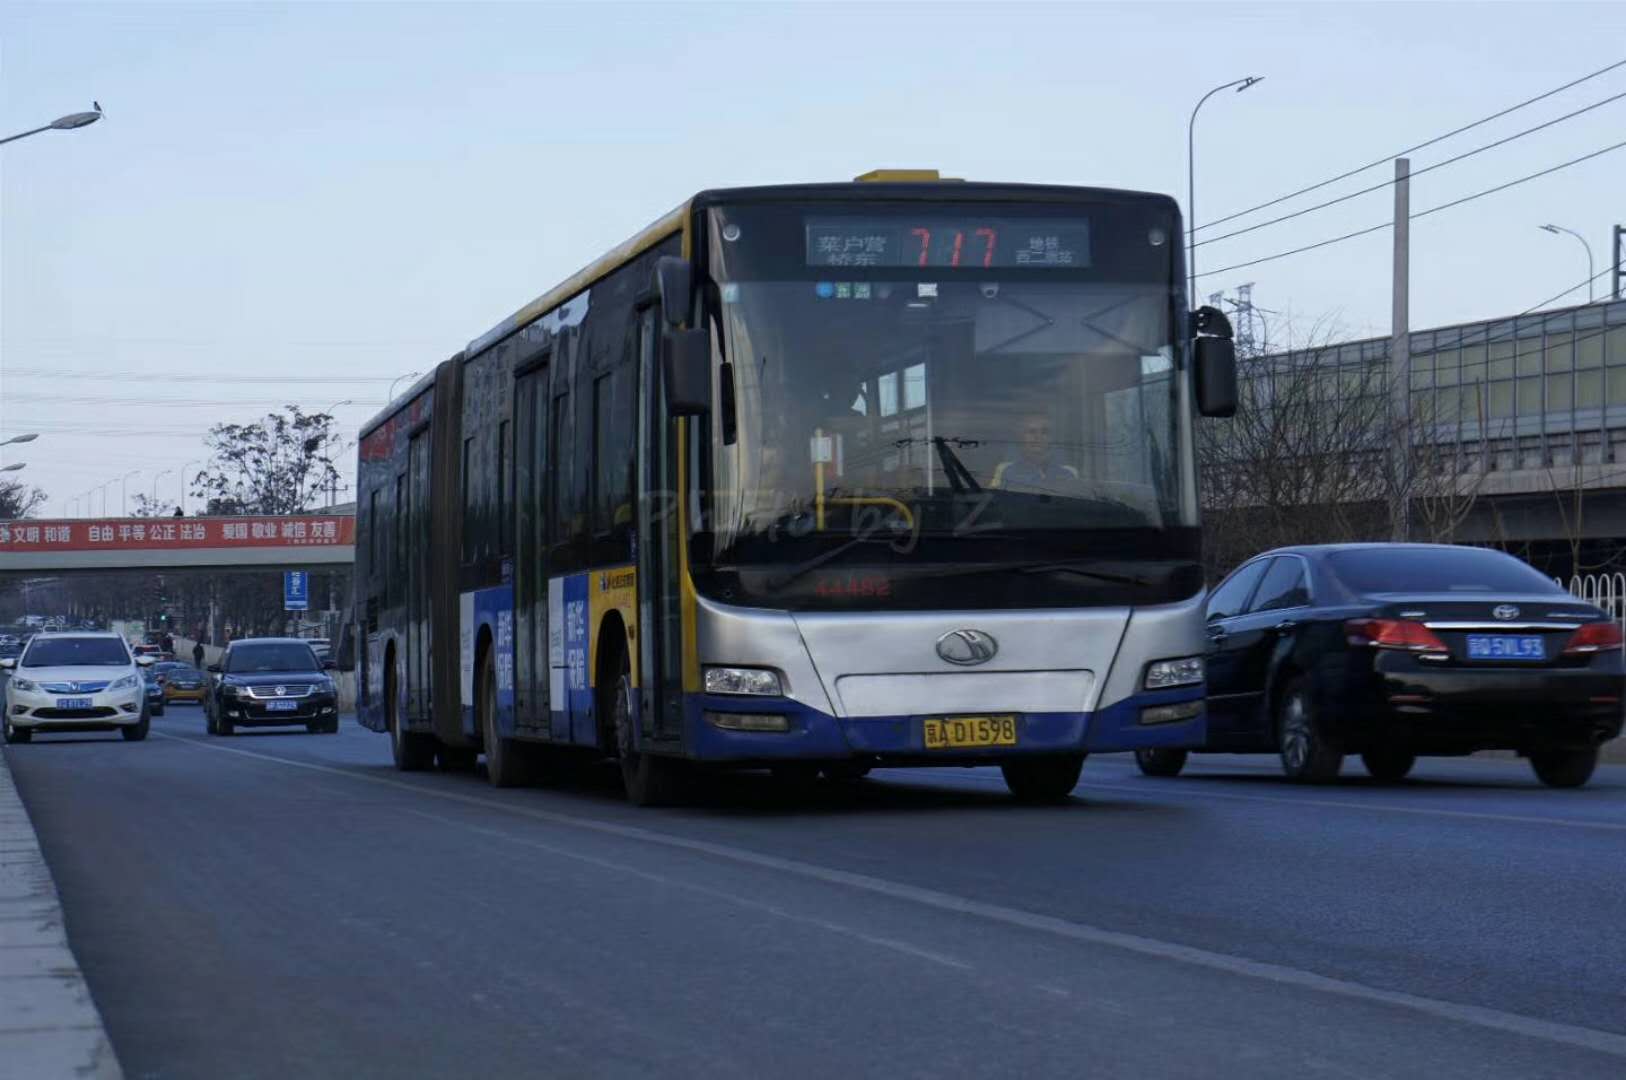 时过境迁,北京巴士公司早已与北京公交集团合并,而白颐路也被改为